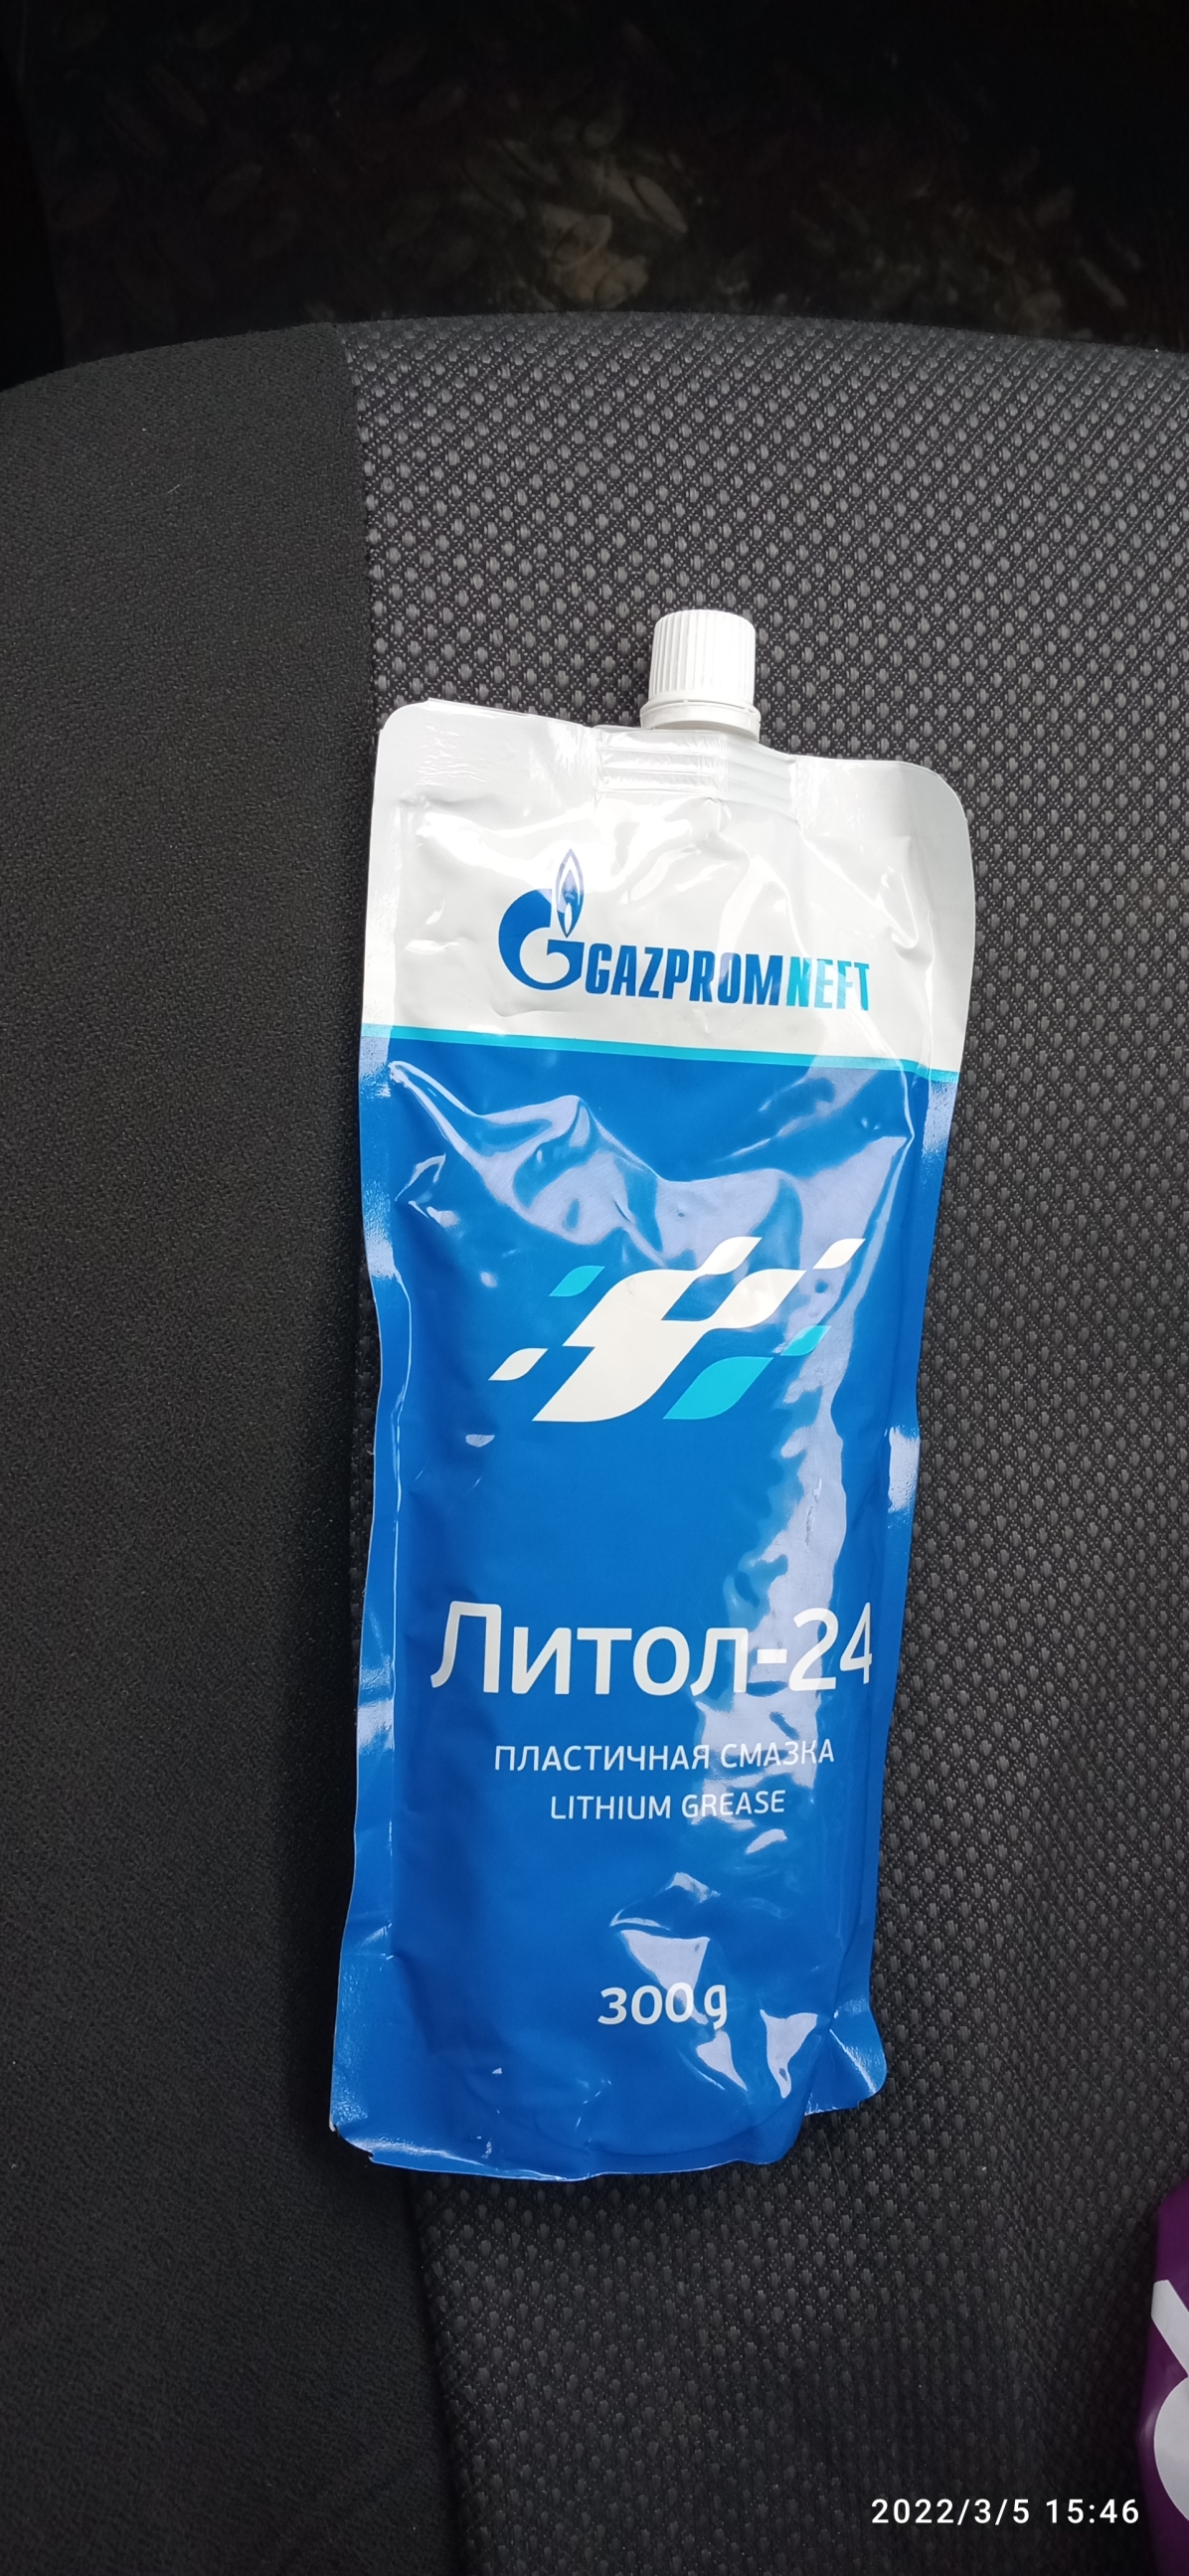 Смазка литиевая ГАЗПРОМНЕФТЬ -24  в Минске — цены в интернет .